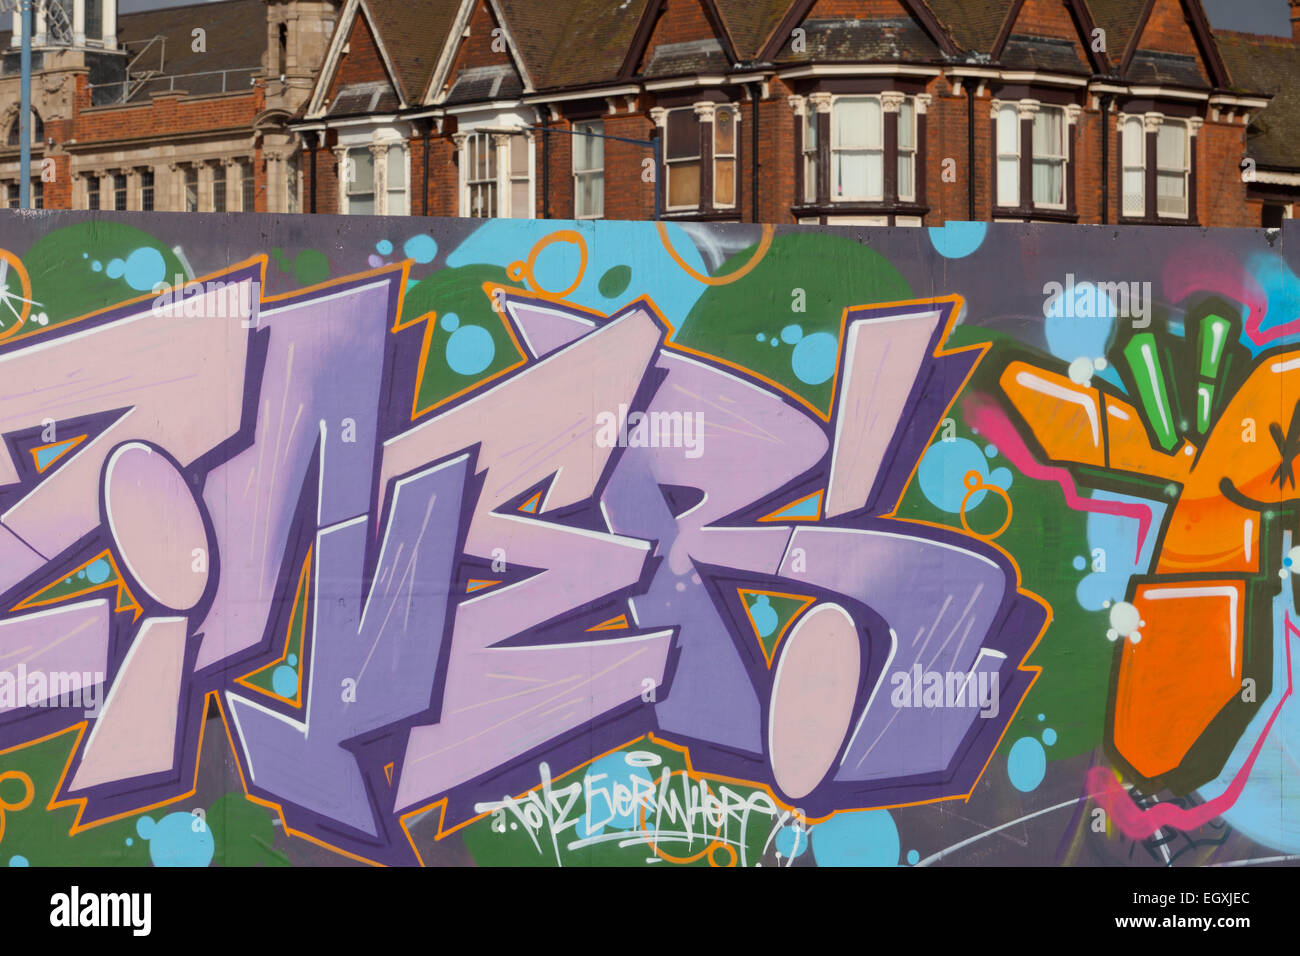 Graffiti sui muri e cartelloni, particolarmente elevate e grafica di qualità tecnica, Digbeth, Birmingham, Regno Unito Foto Stock